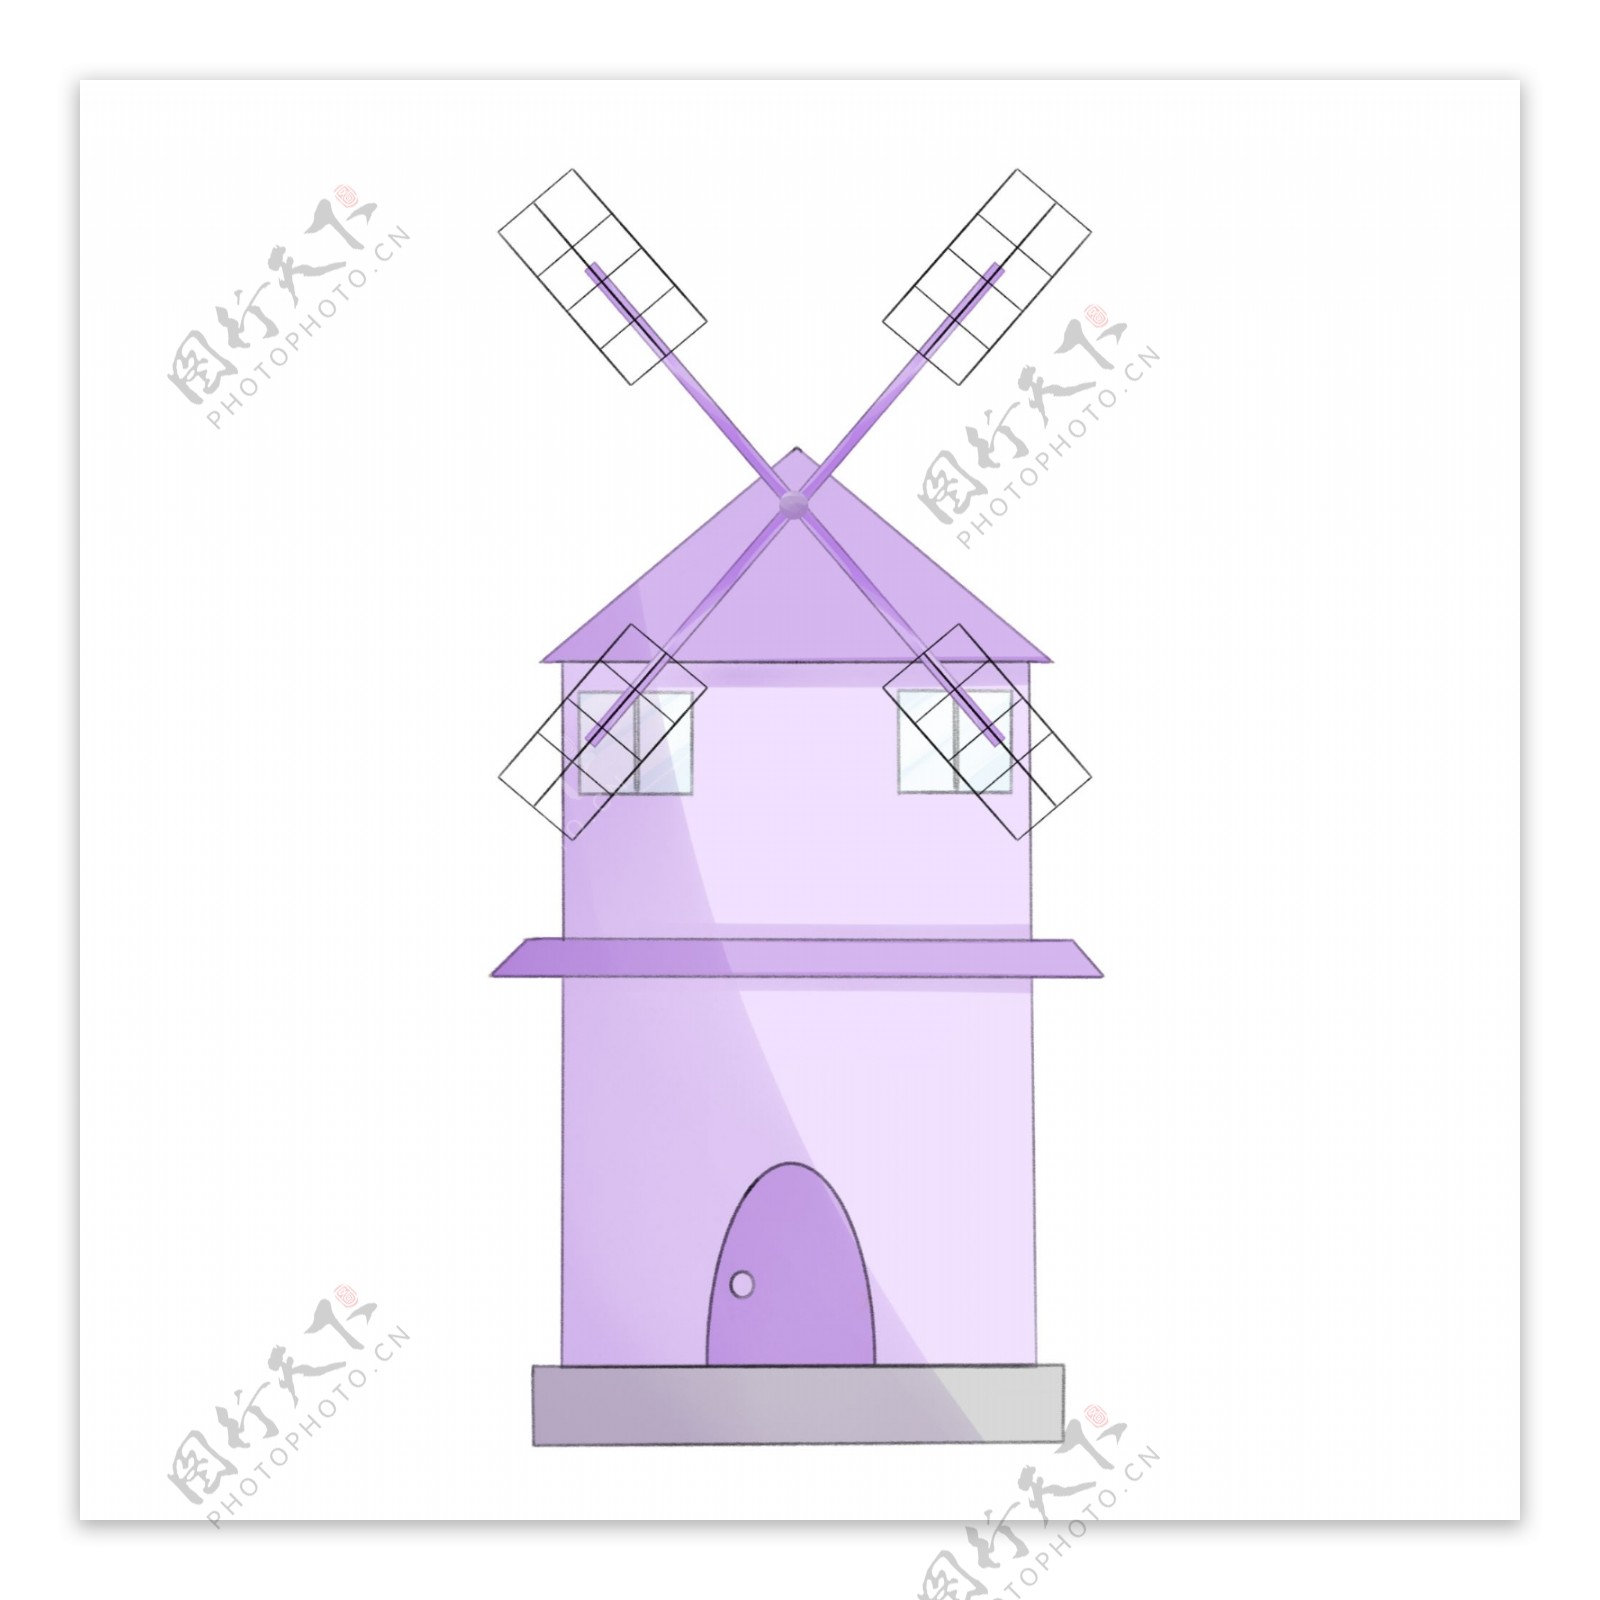 紫色大气风车屋插图